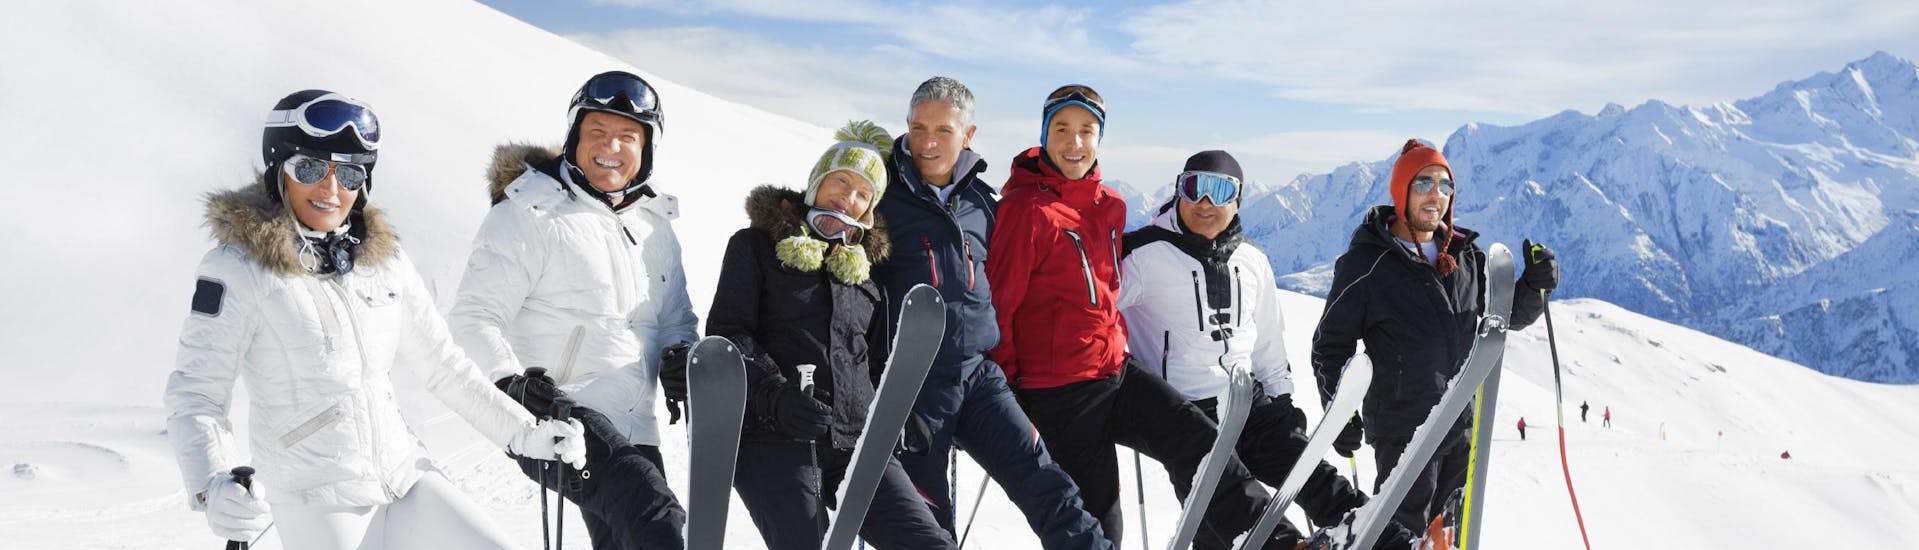 Un grupo de esquiadores da una clase de esquí en al estación de esquí de Val Venosta (Vinschgau). 